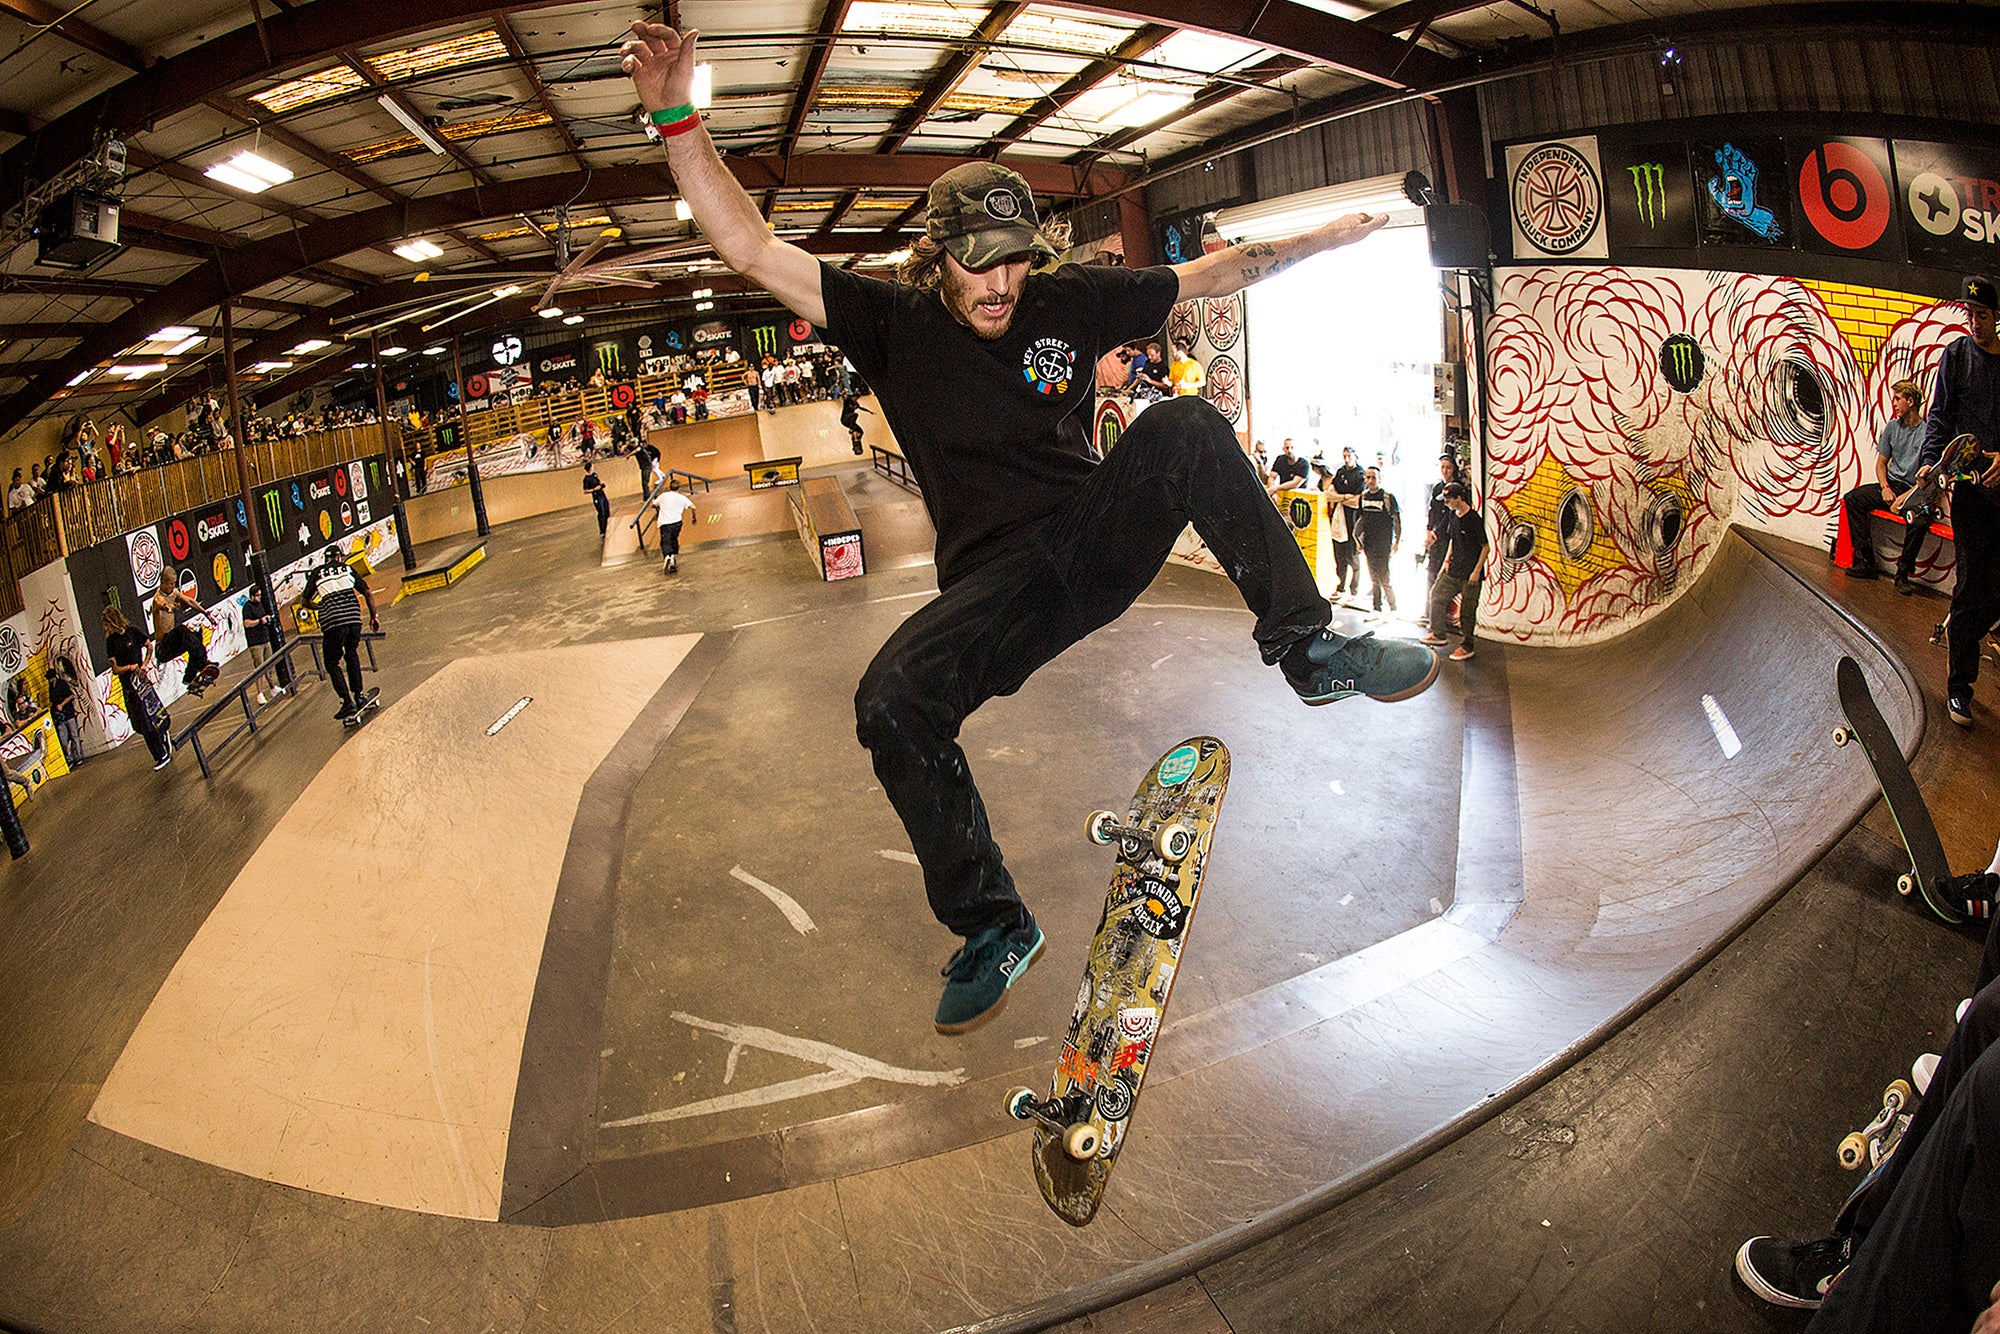 Dave Bachinsky, Skateboarder: El Toro Skateboarder